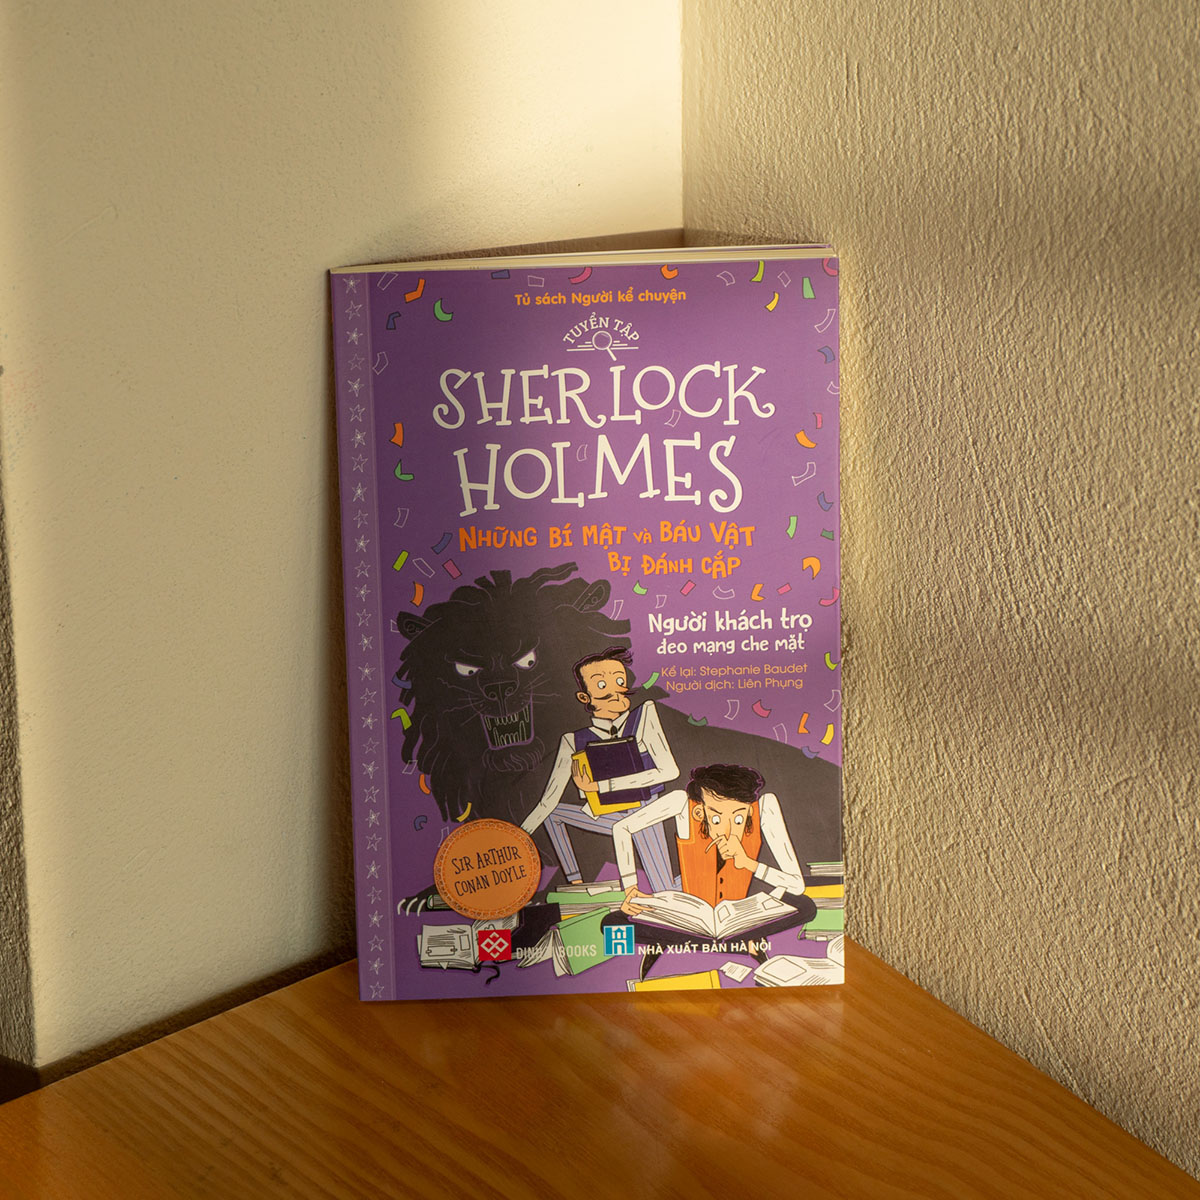 Tuyển Tập Sherlock Holmes - Những Bí Mật Và Báu Vật Bị Đánh Cắp- Người Khách Trọ Đeo Mạng Che Mặt